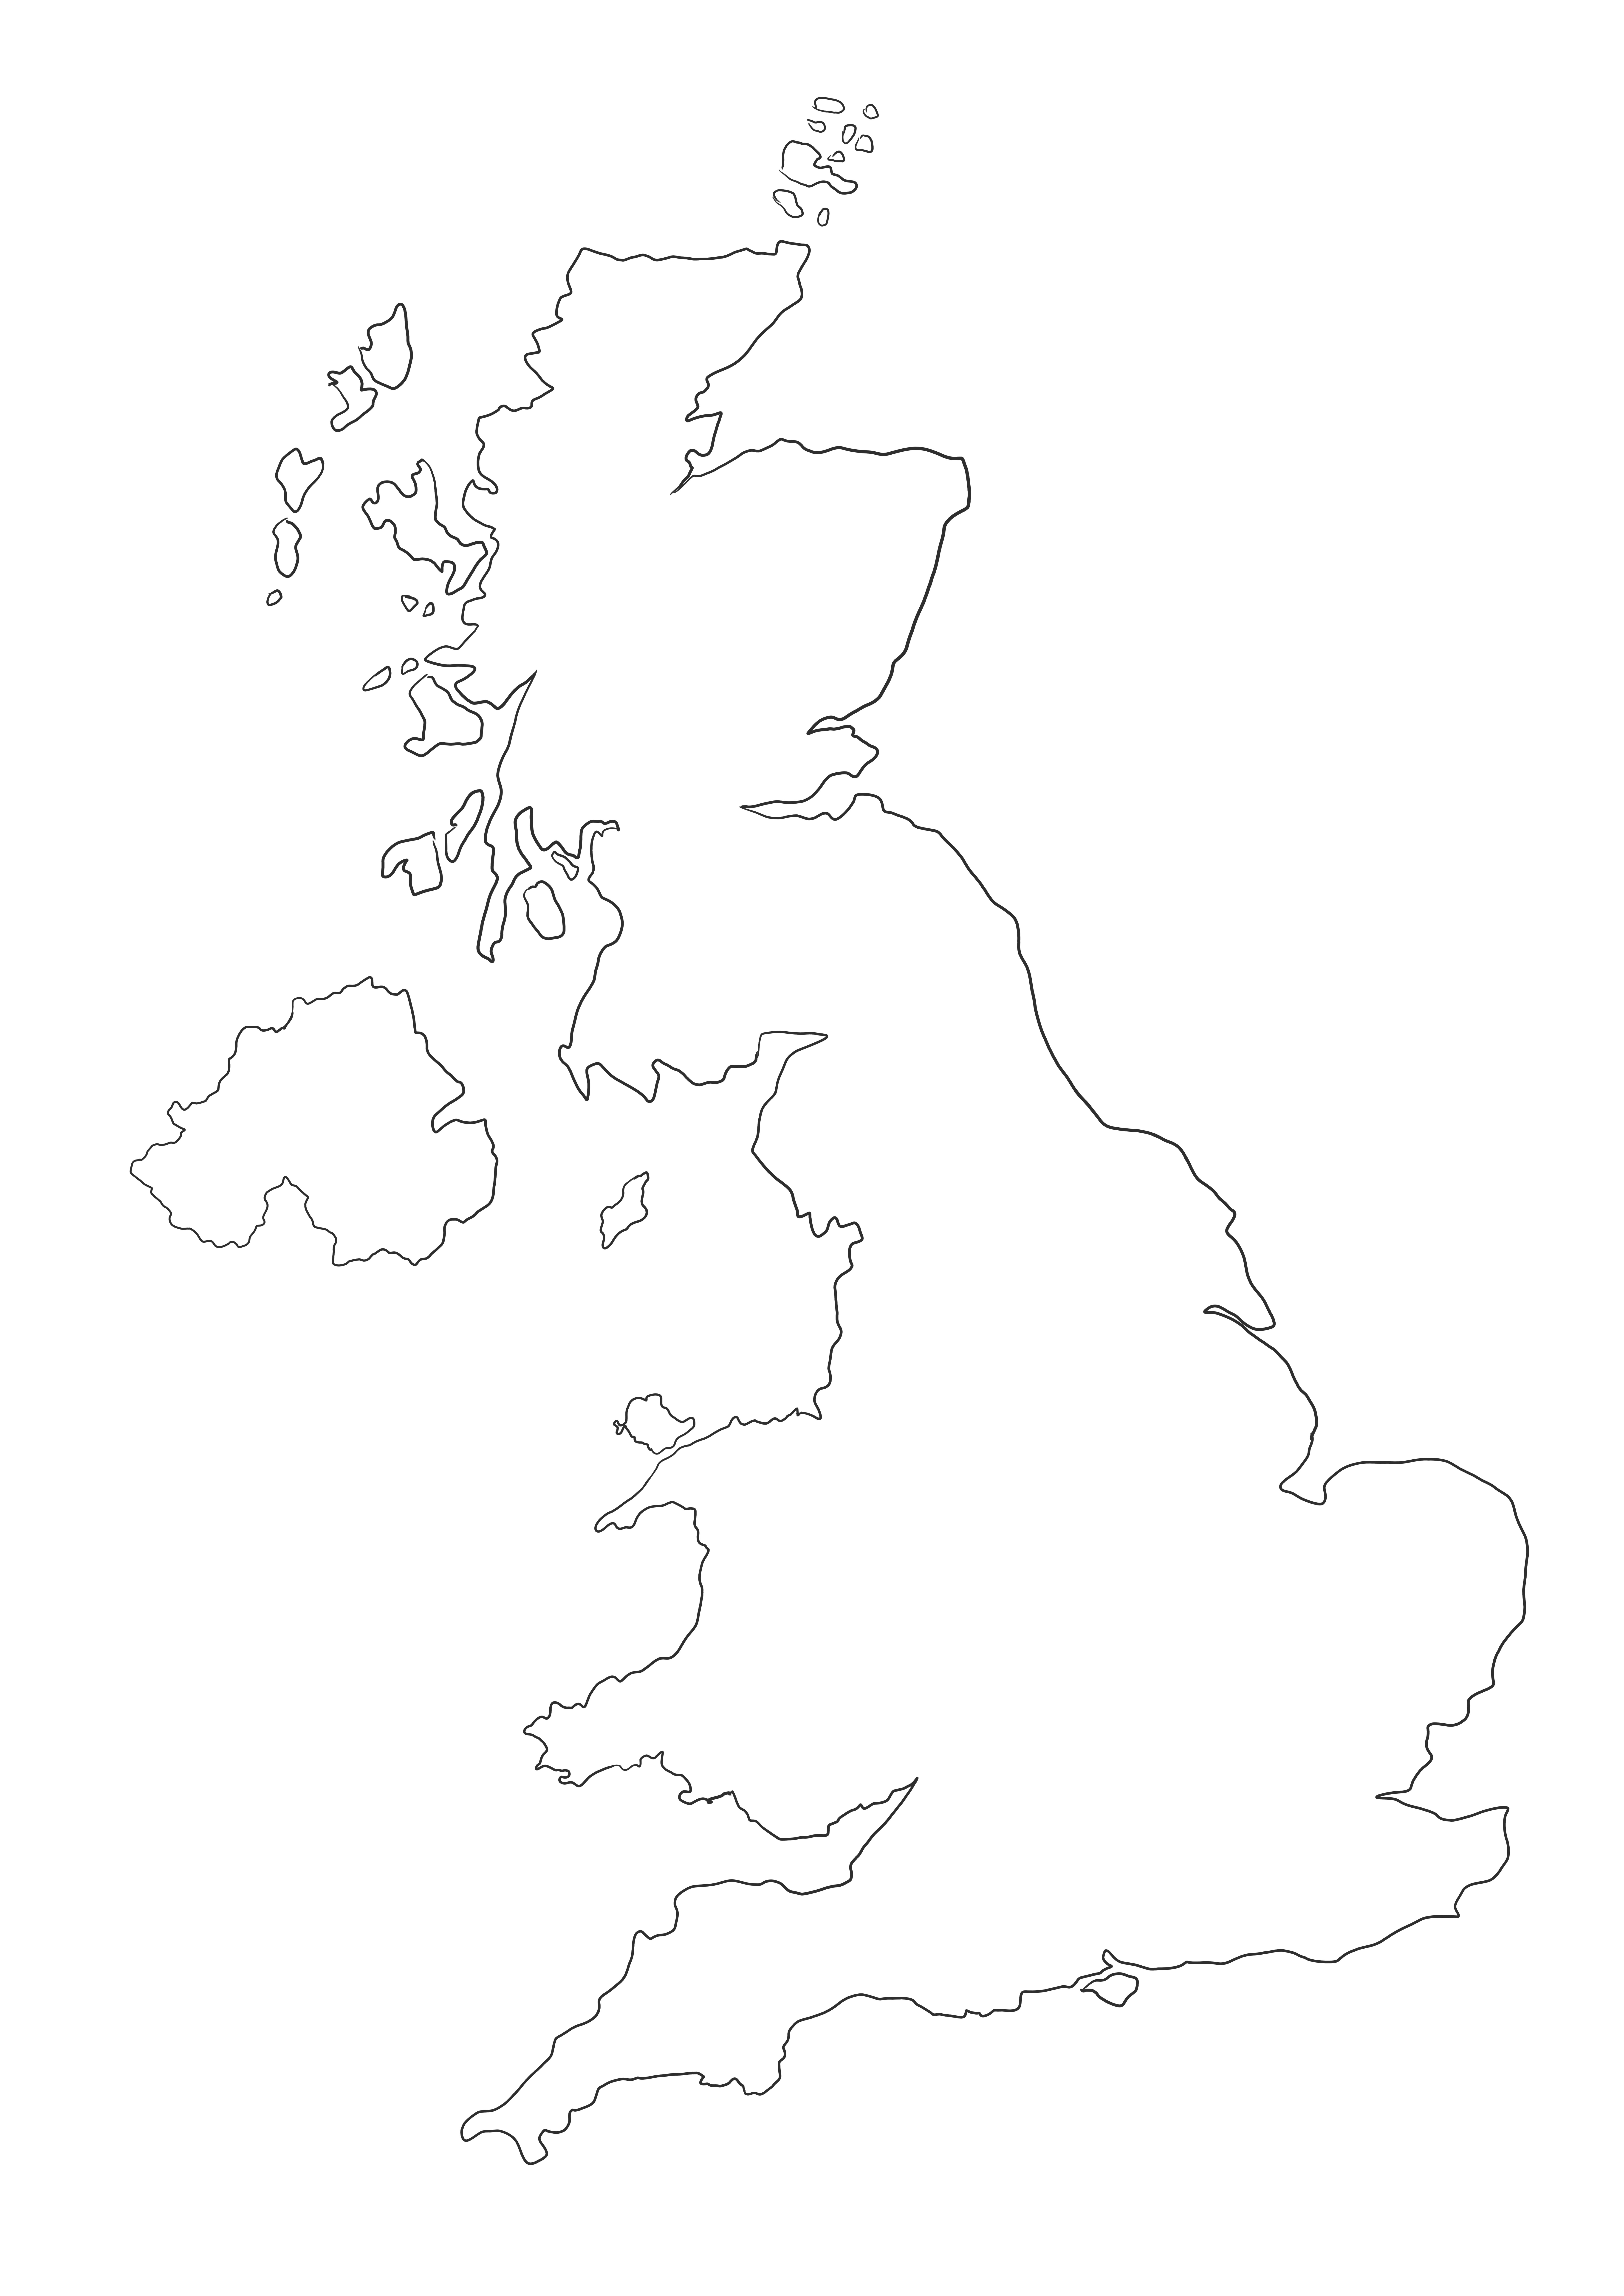 Pusta mapa konturowa Wielkiej Brytanii do wydrukowania za darmo dla dzieci do kolorowania